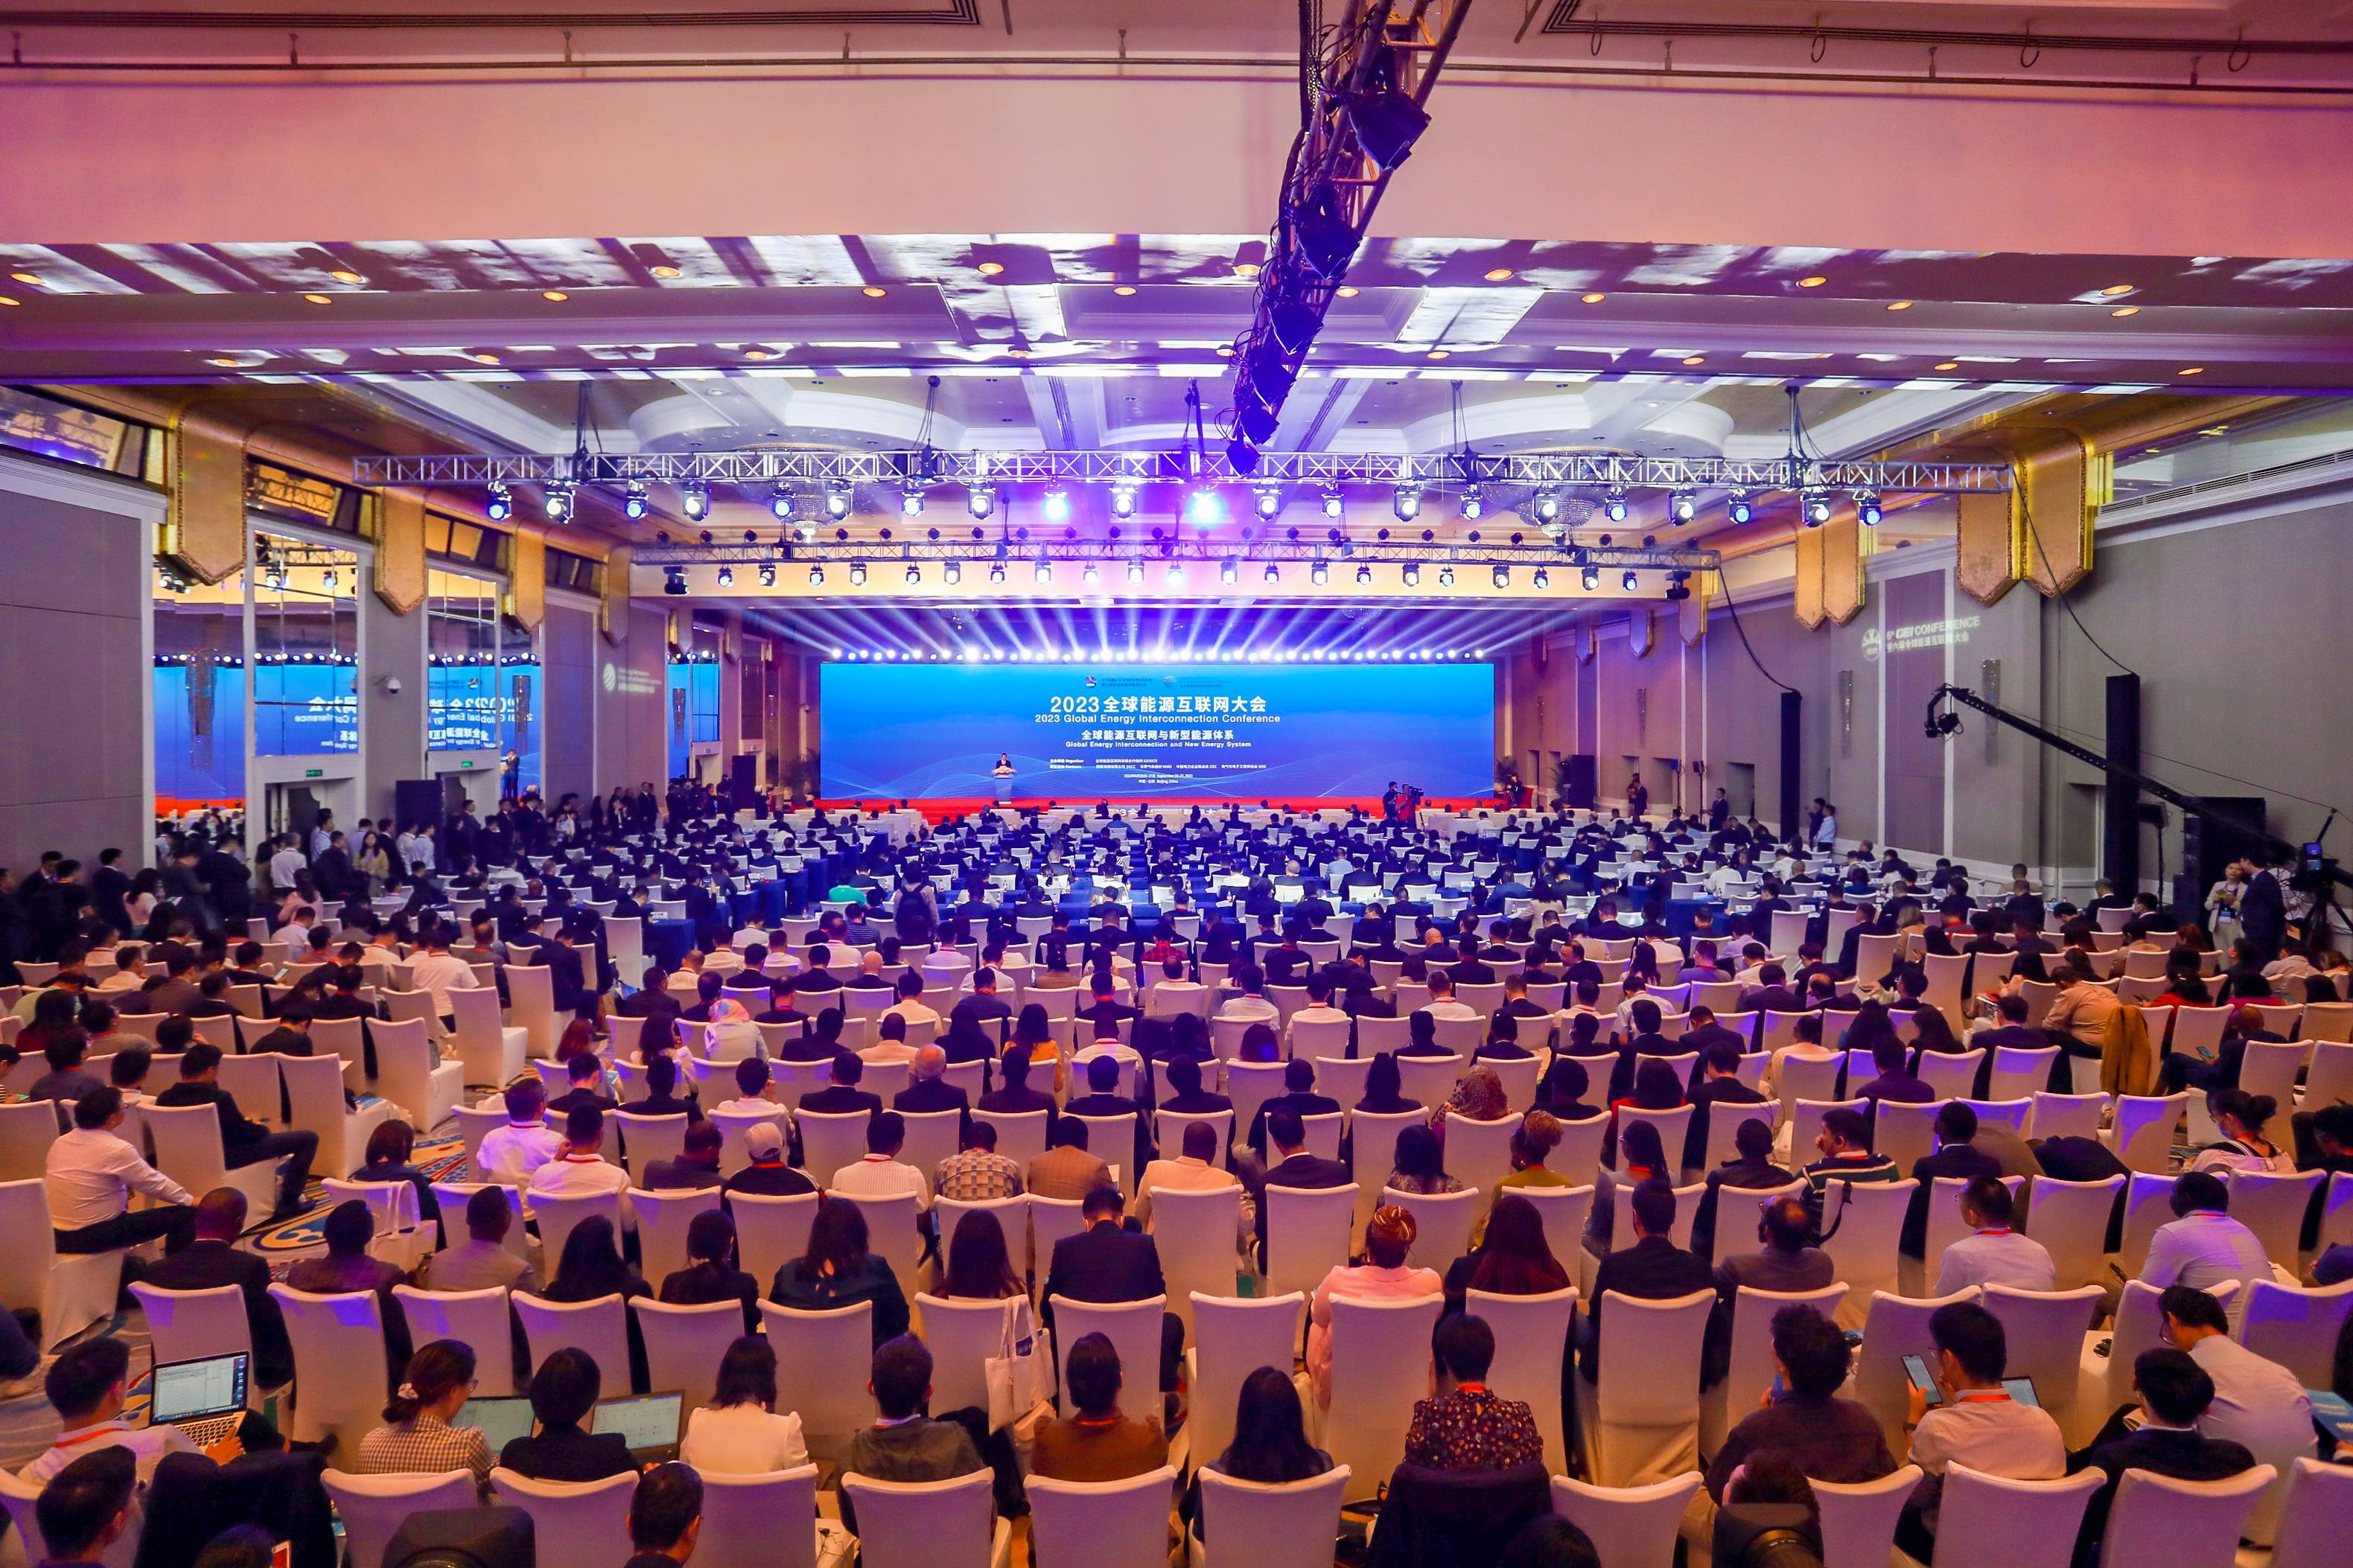 共商大计 共同建设 共促发展 2023全球能源互联网大会在京召开